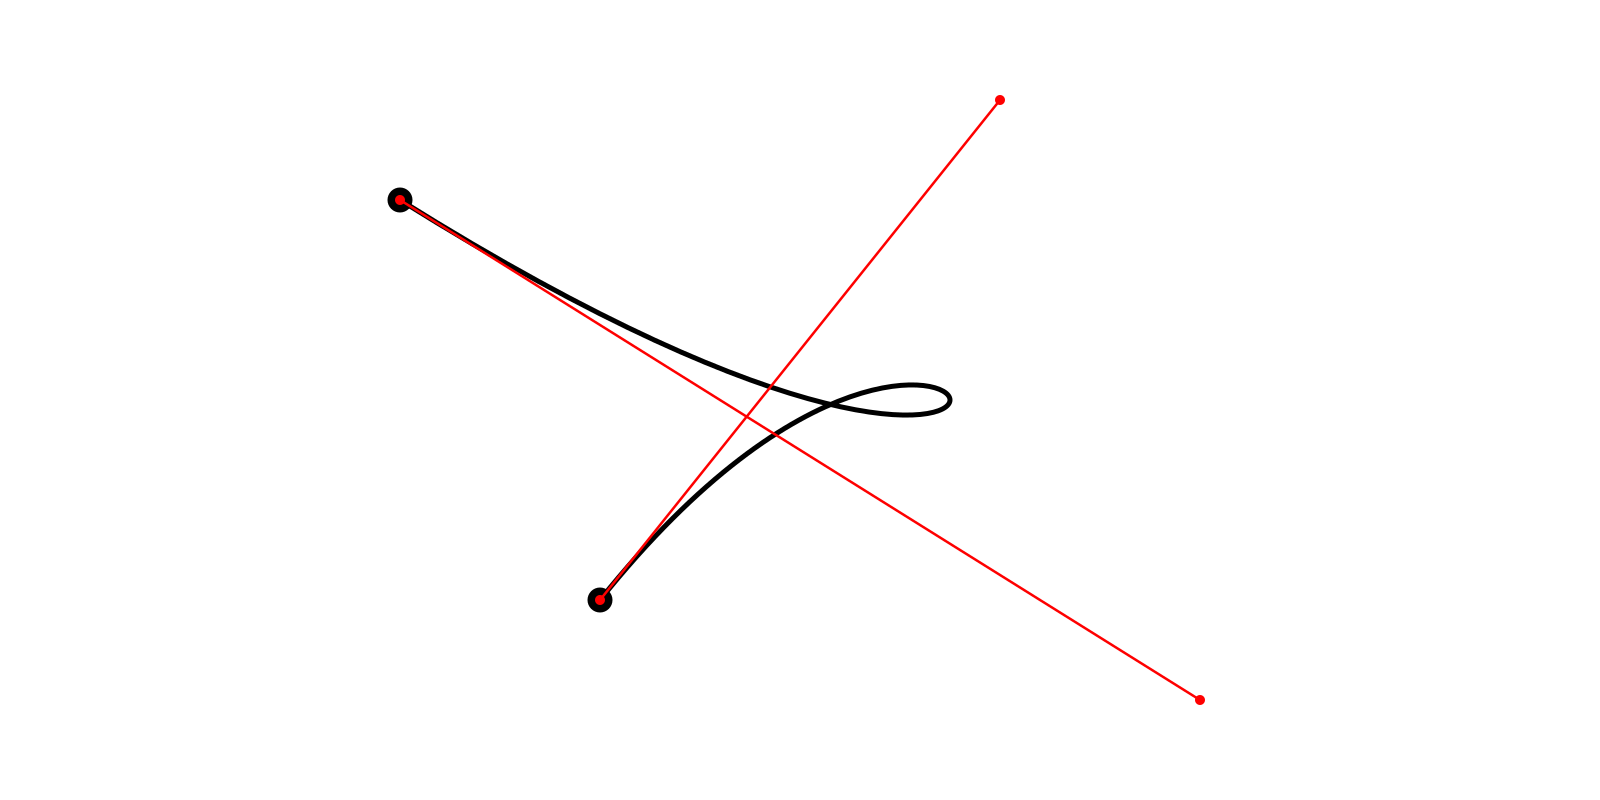 Адаптивное разбиение кривых Безье 2-го и 3-го порядка - 4